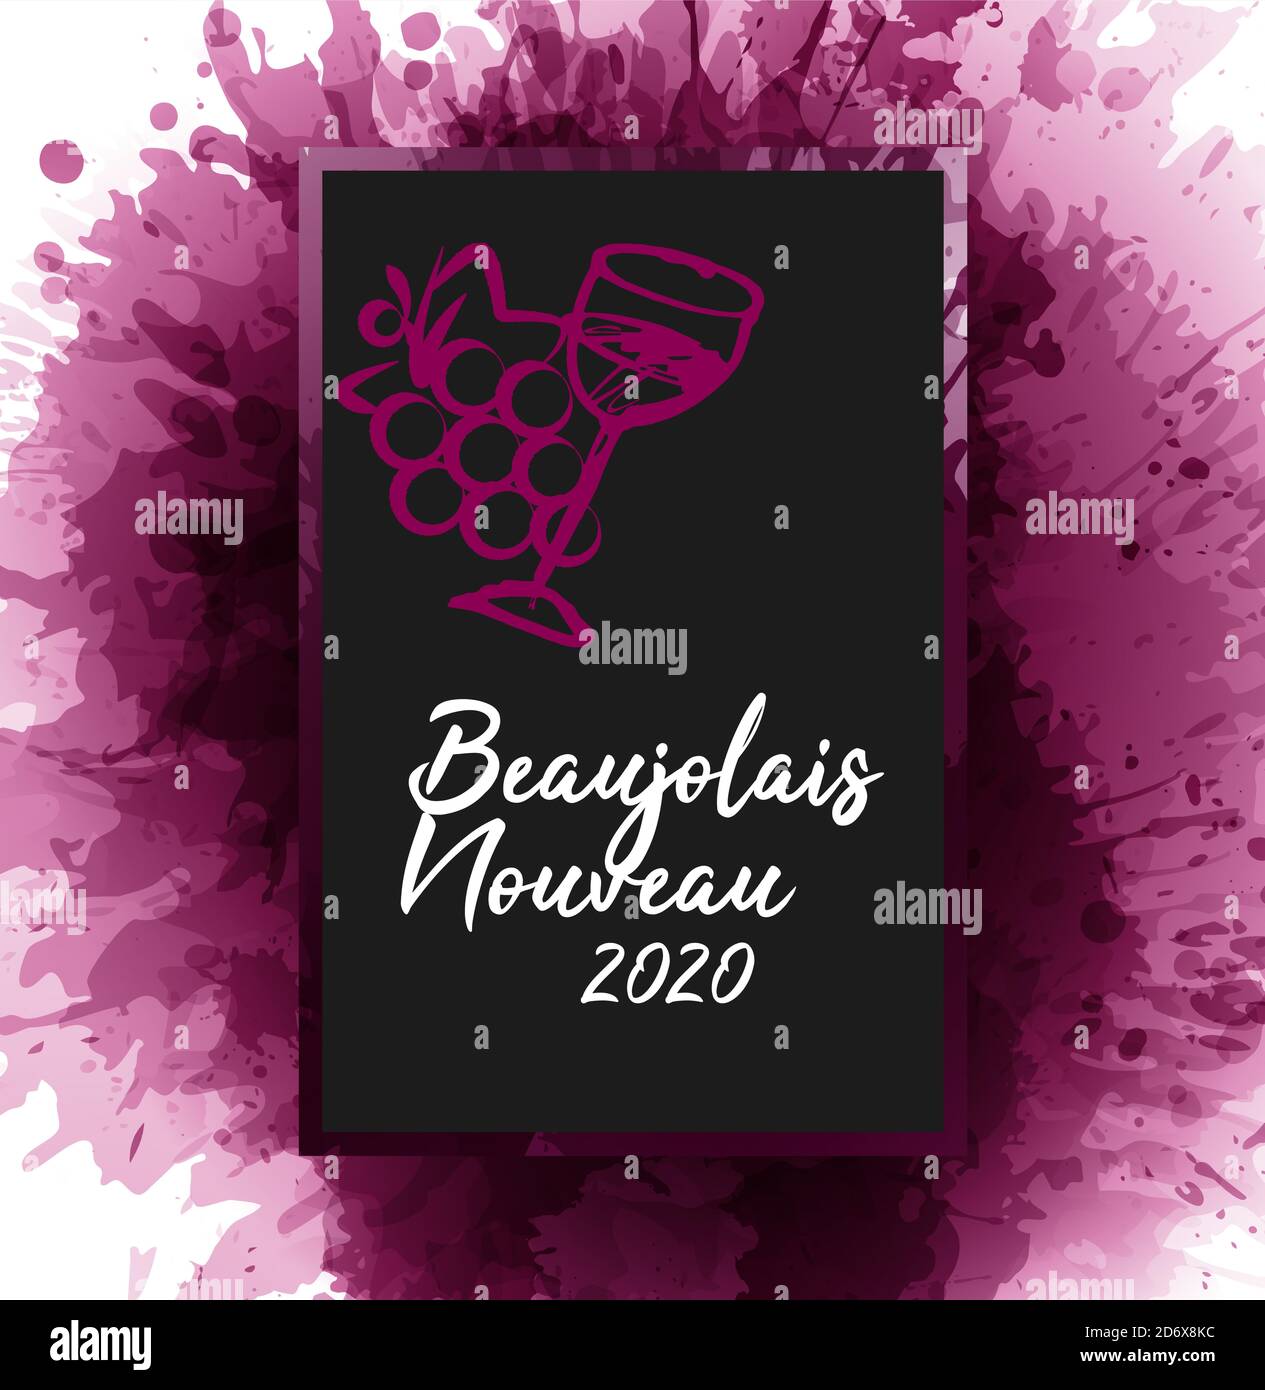 Tafel mit dem französischen Text 'Beaujolais nouveau 2020', neu Beaujolais 2020. Illustration von Traubenhaufen und Weinglas. Weinflecken im Hintergrund Stock Vektor